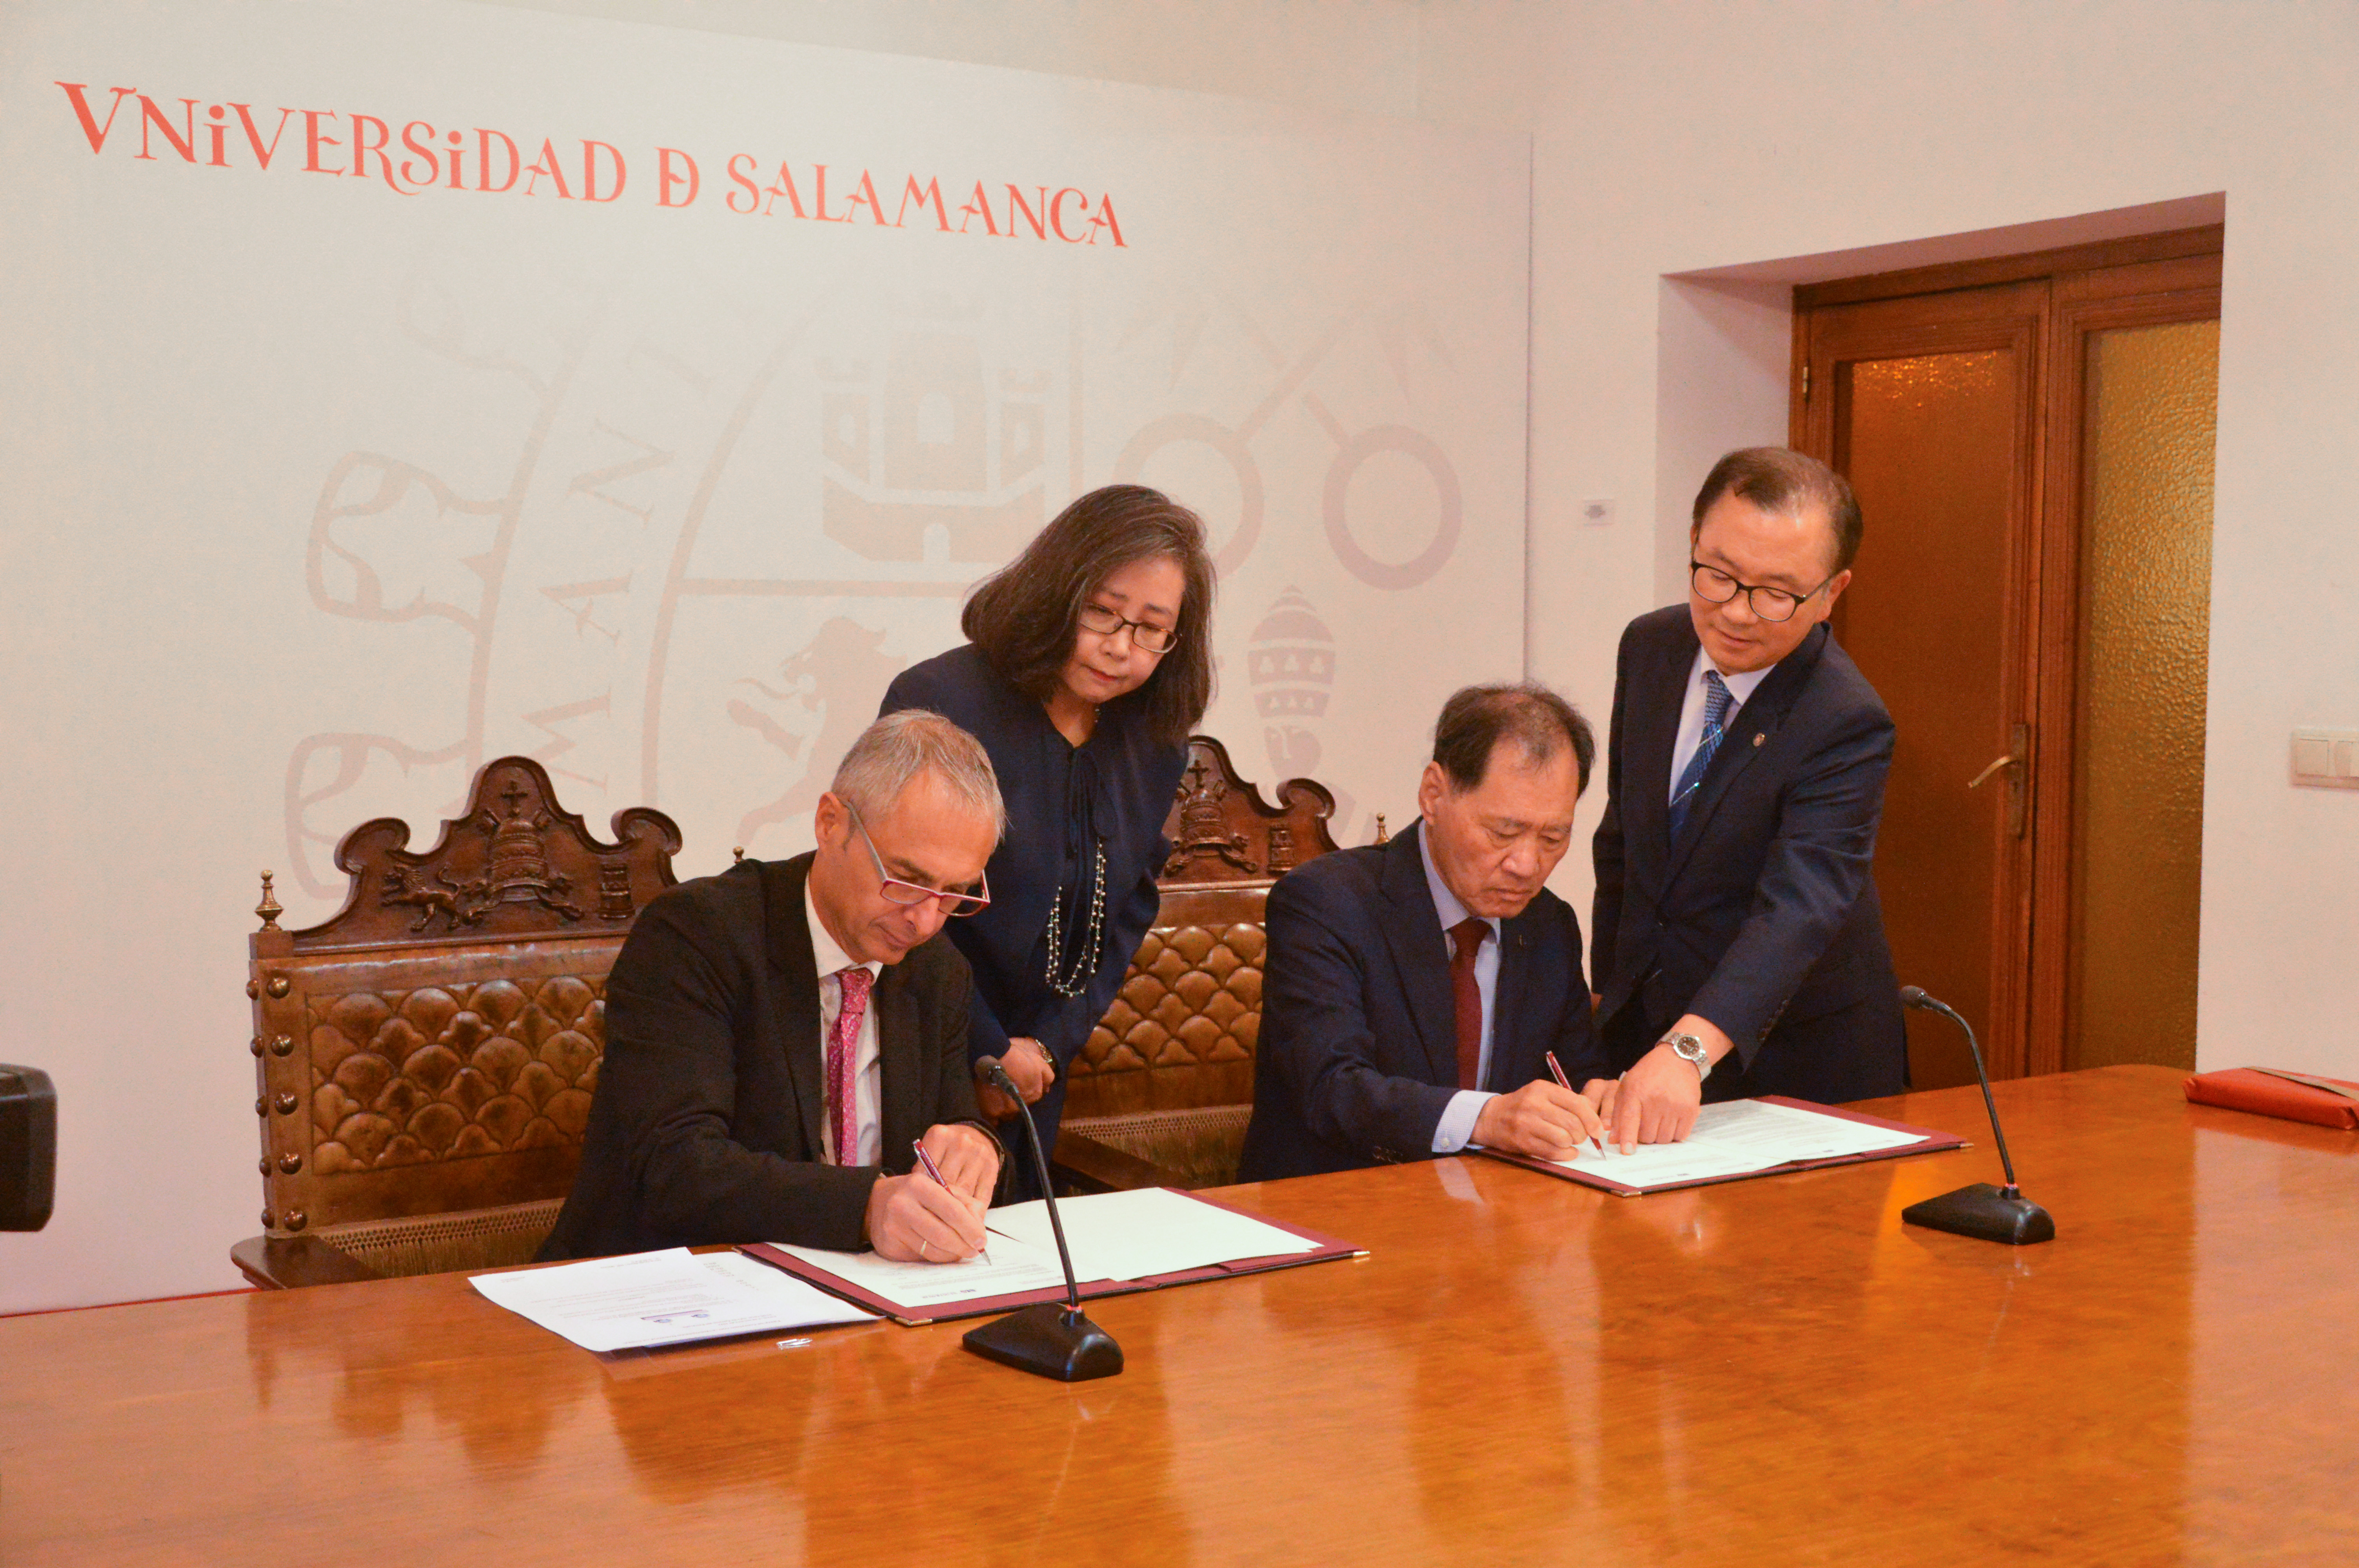 Las universidades de Salamanca y Dankook impulsan los estudios del Máster en Estudios Avanzados de Lenguas, Literaturas y Culturas de Asia Oriental/Estudios Coreanos 